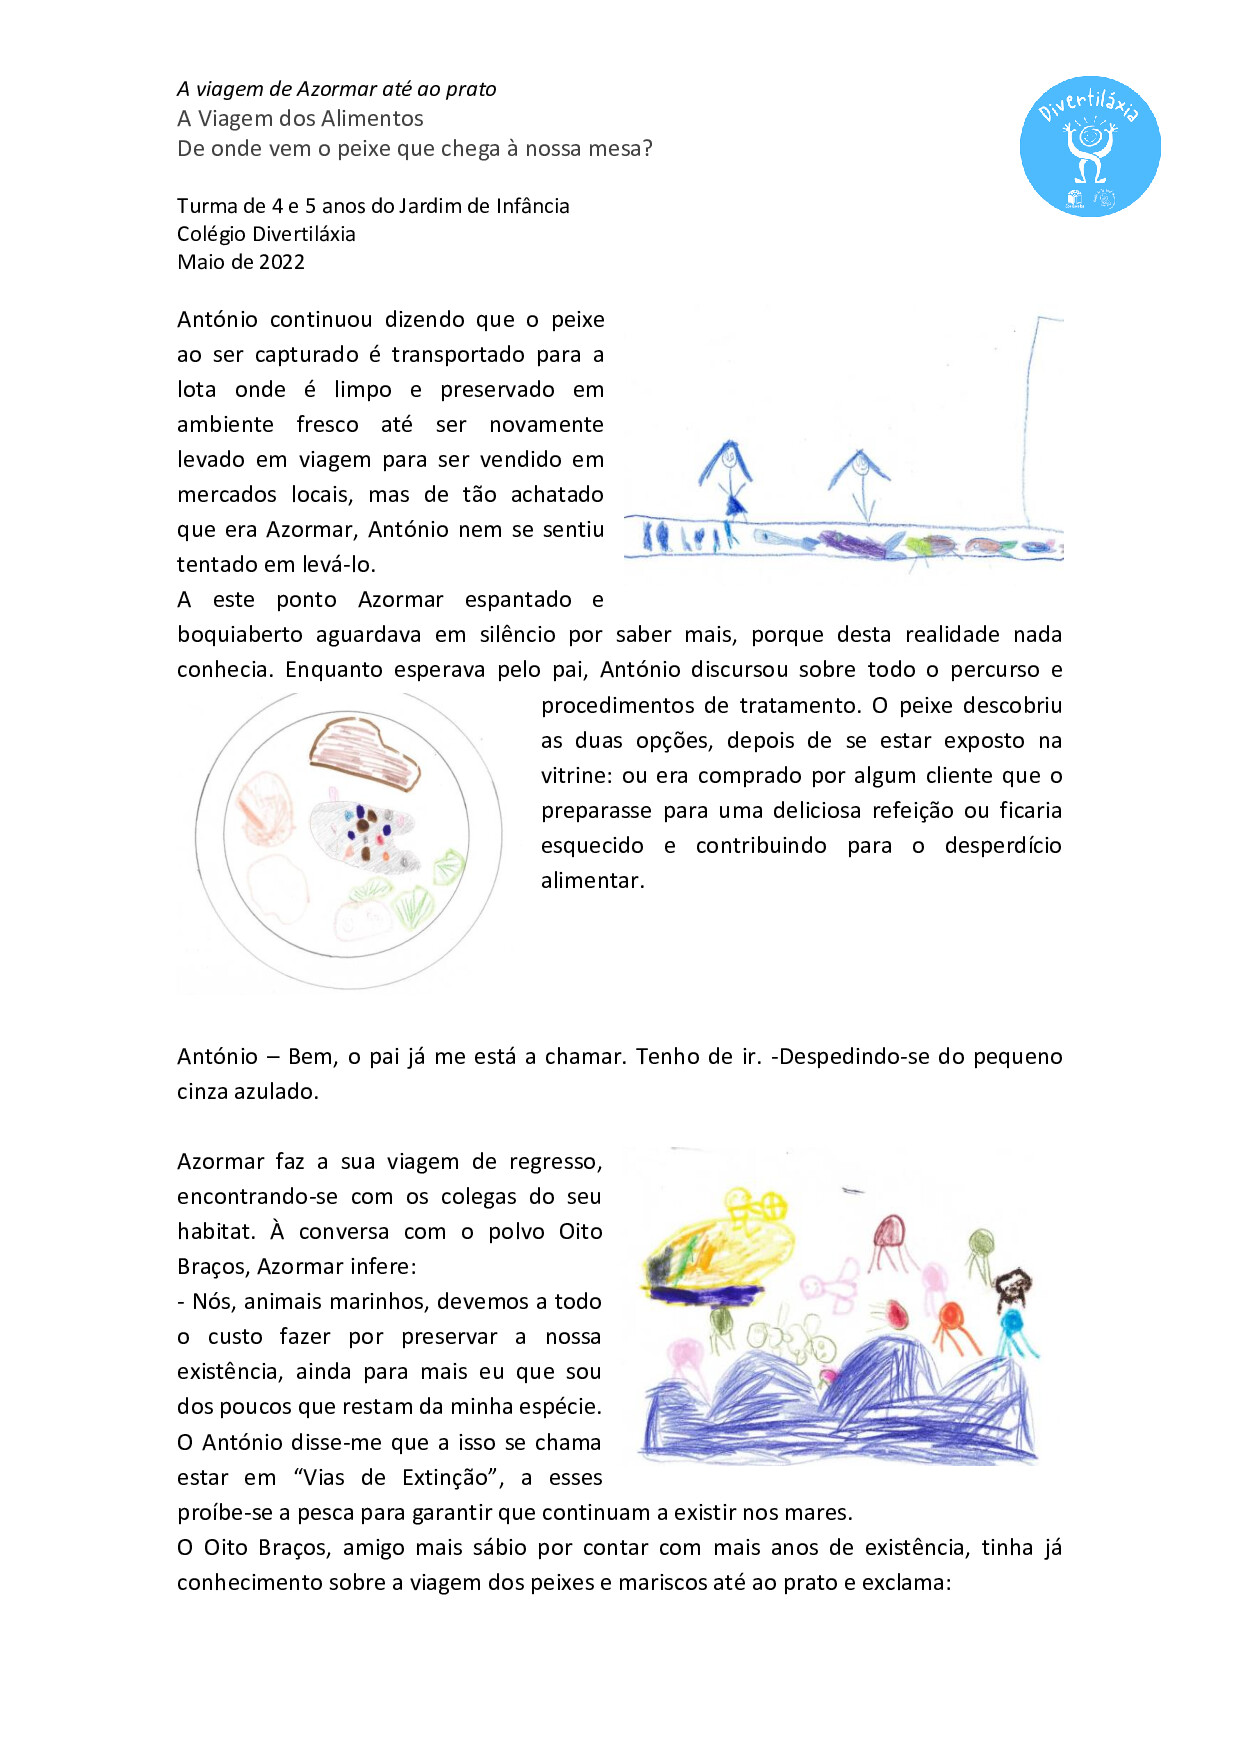 História em pdf com inscrição de desenhos elaborados pelas crianças da turma.